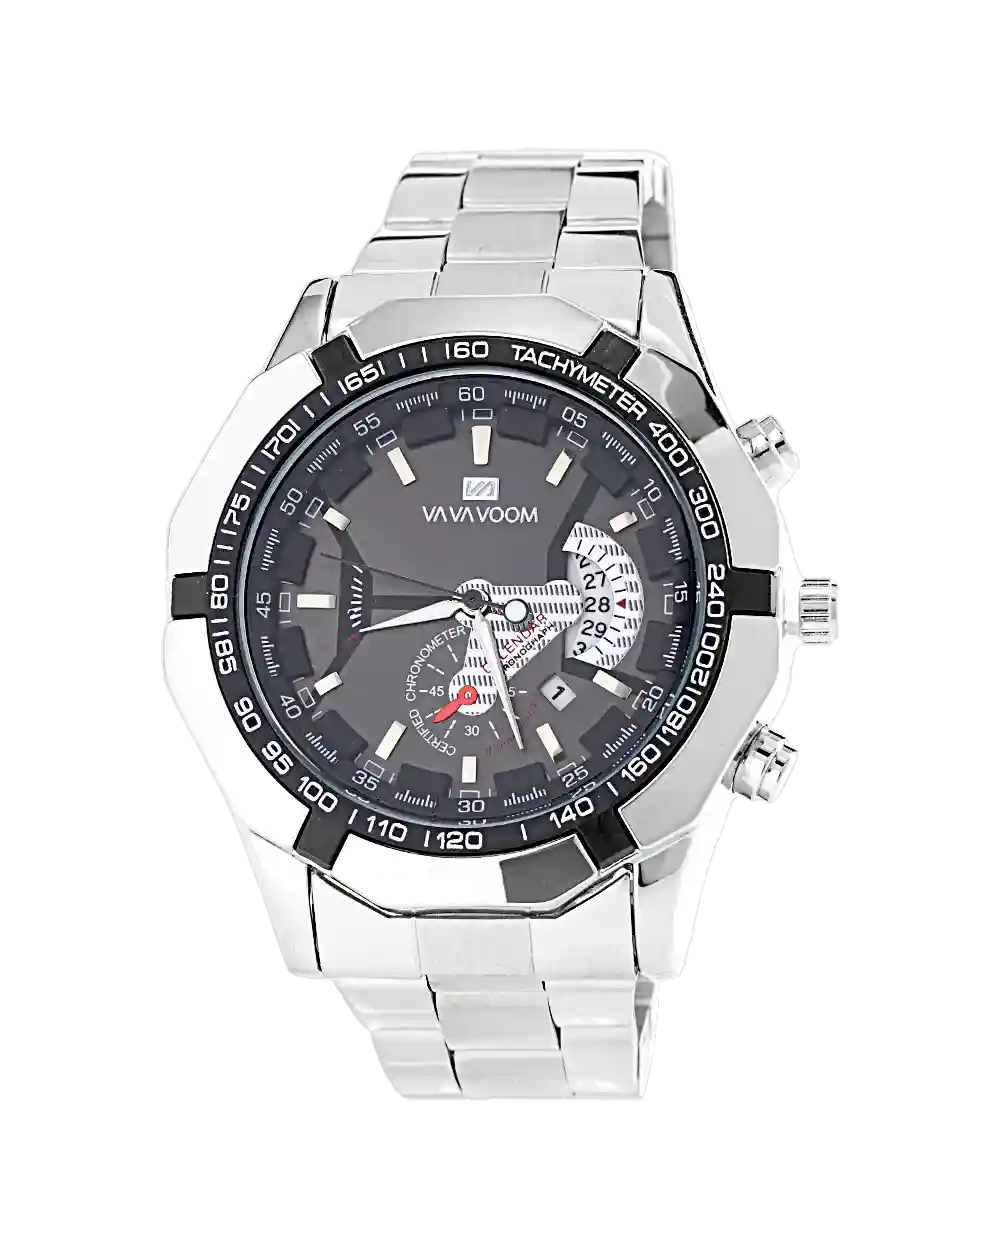 قیمت و خرید ساعت مچی مردانه VAVA VOOM مدل 1553 رنگ نقره ای همراه با جعبه ی کادویی و ارسال رایگان | ساعت مردانه اصلی نقره ای | ساعت مردانه شیک و جدید